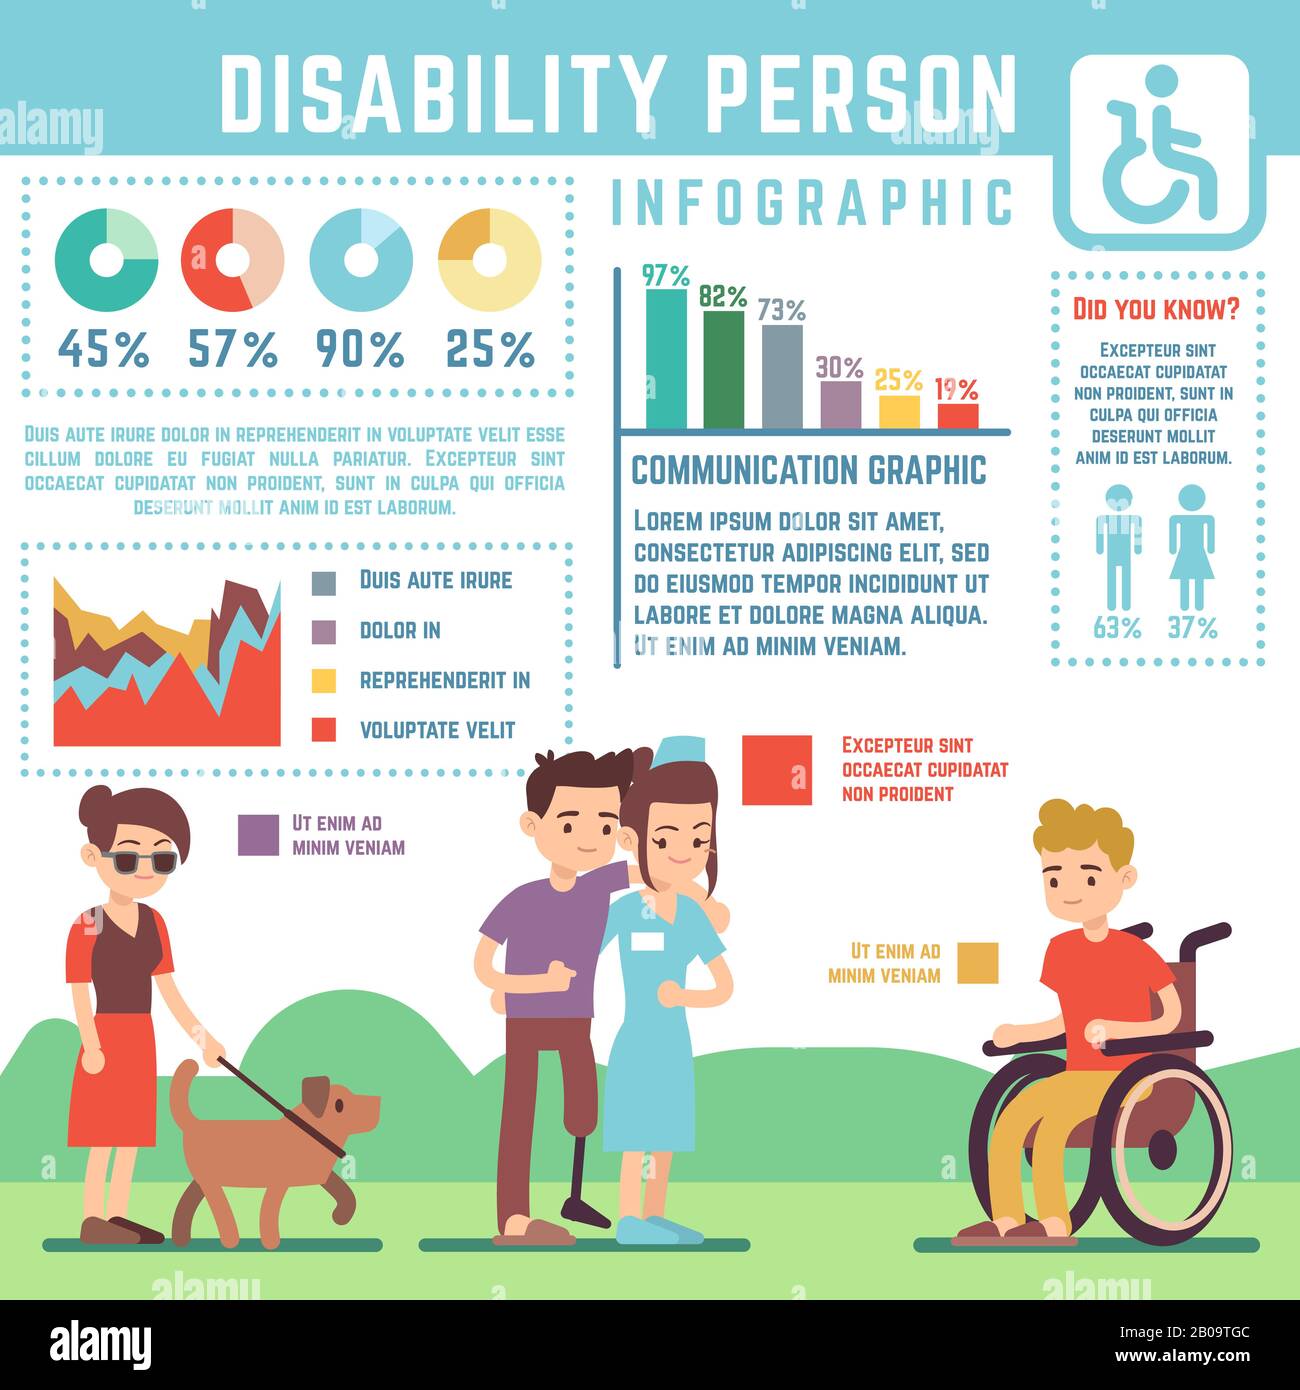 Infographie vectorielle sur les personnes handicapées, les personnes handicapées et les personnes handicapées. Désactivé non valide les informations de bannière de personnes, illustration des statistiques médicales handicapés Illustration de Vecteur